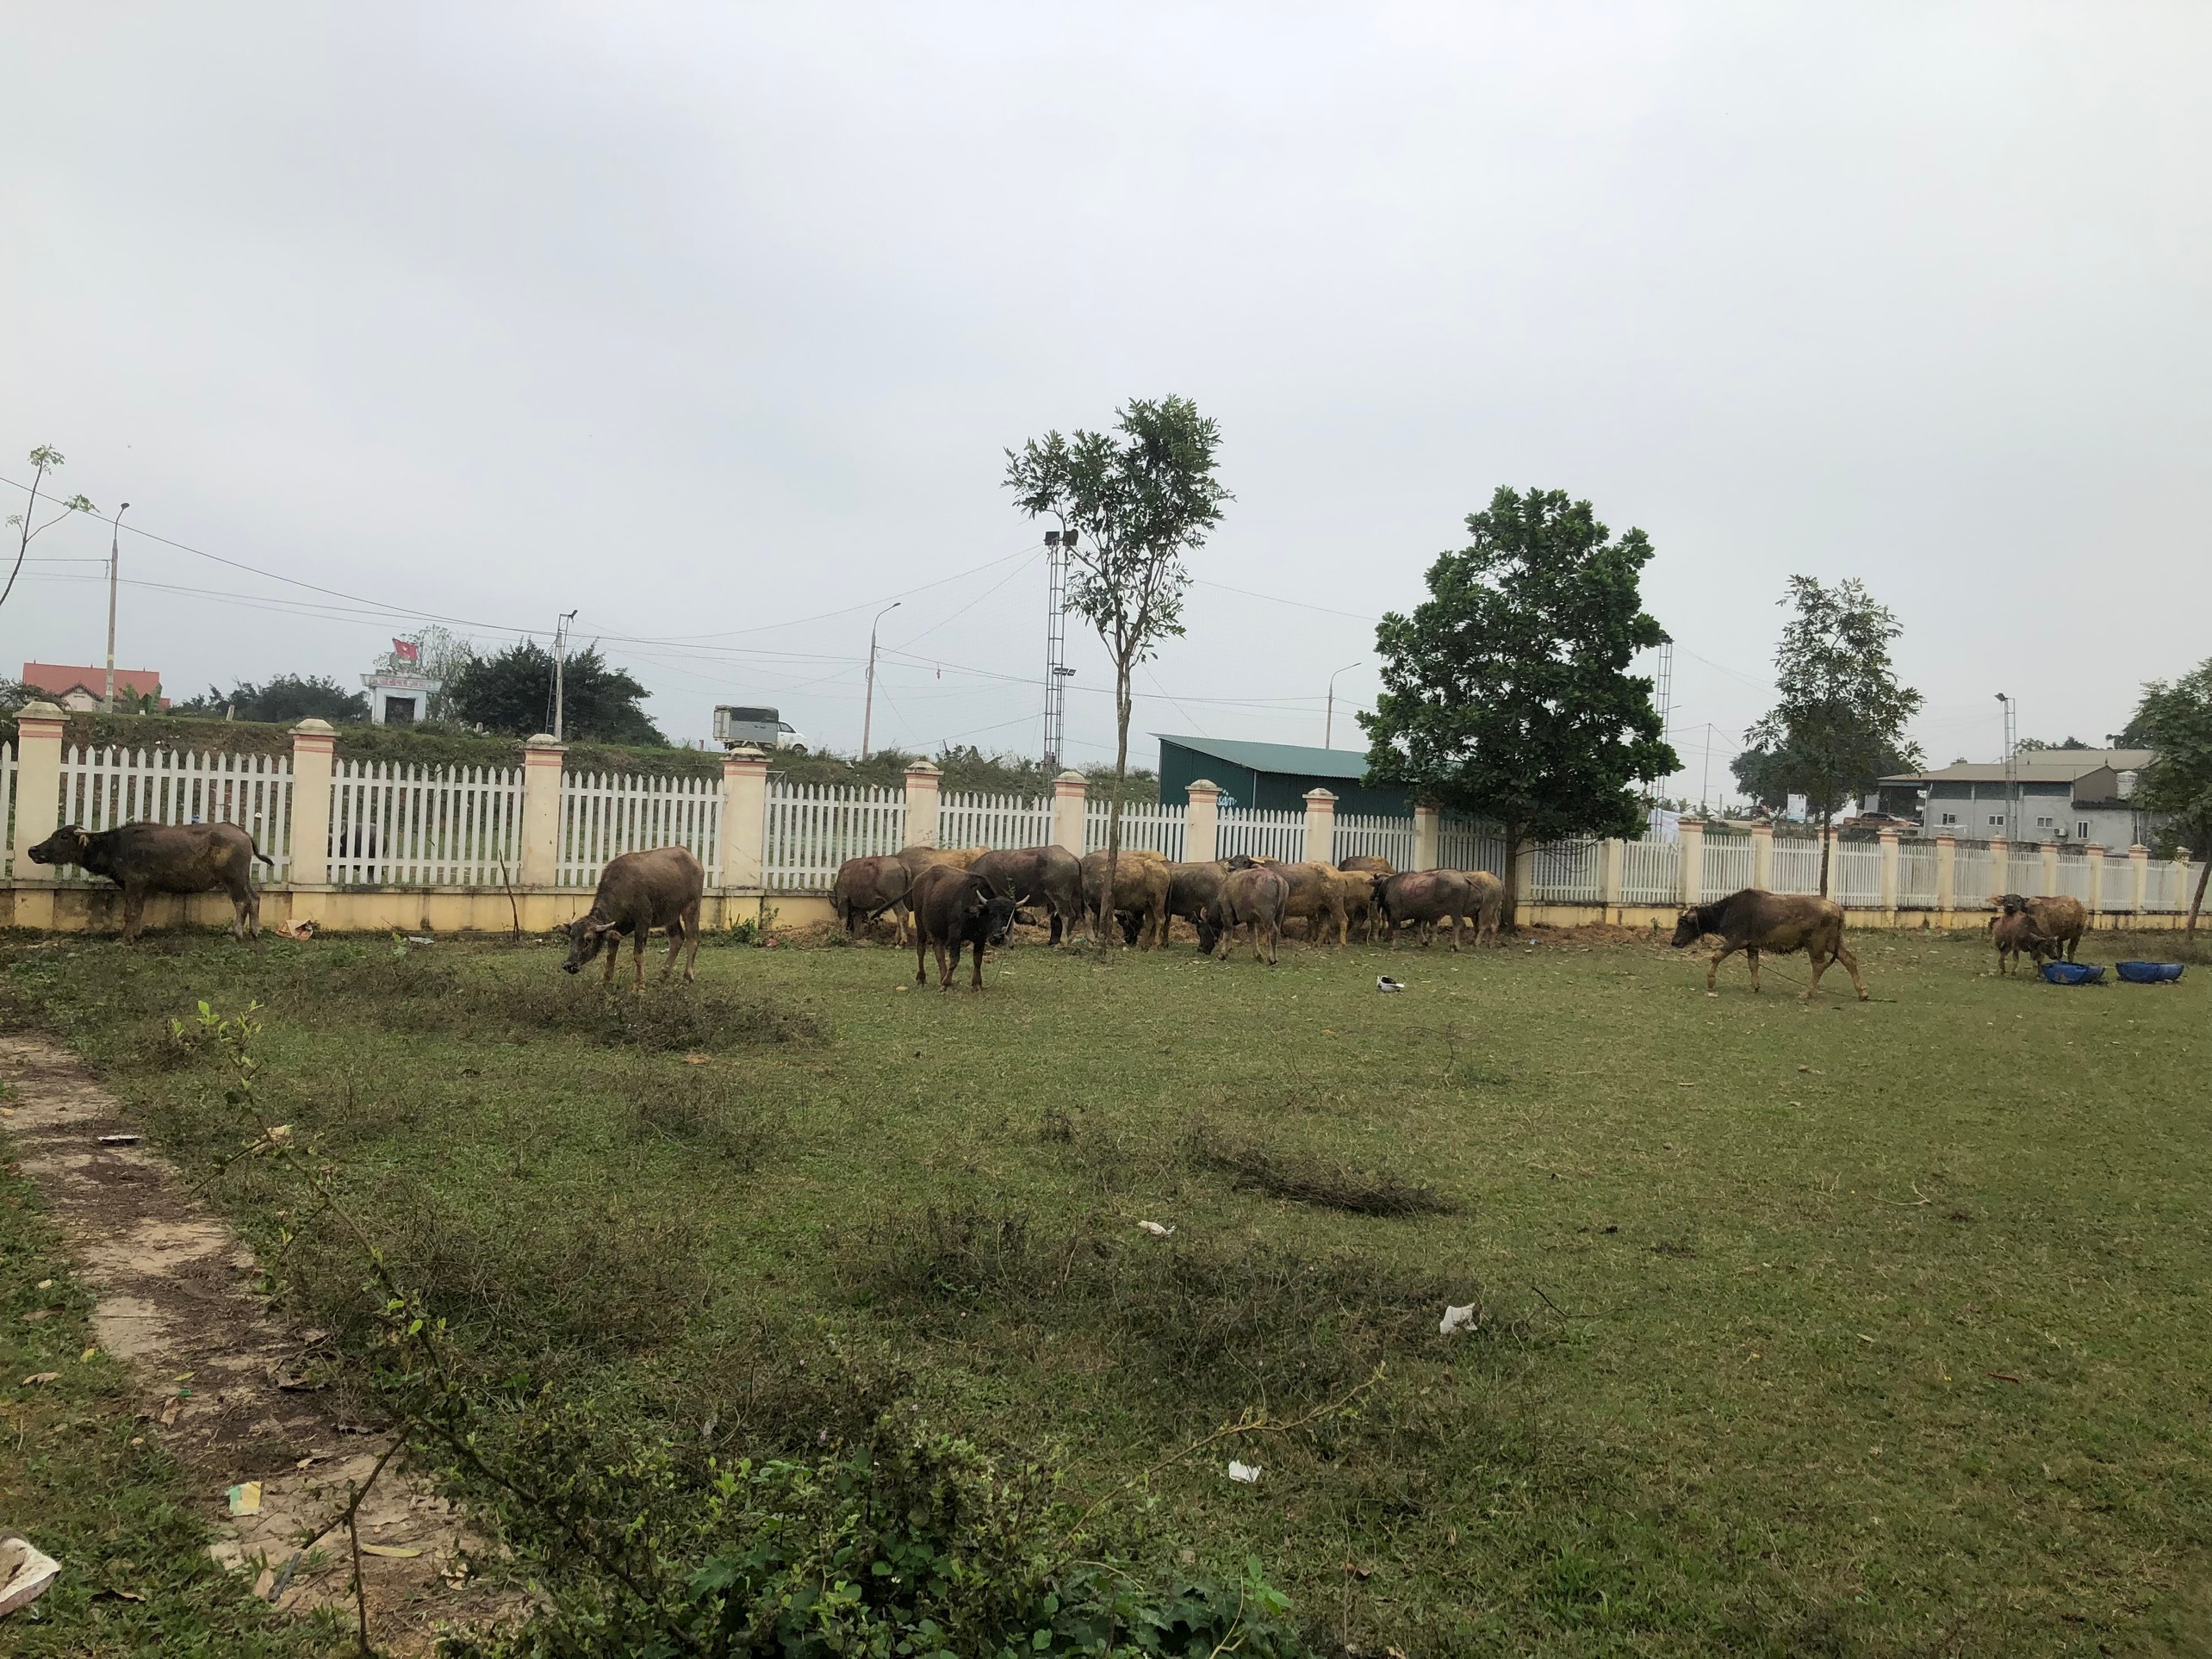 Pháp luật - Phú Thọ: Bắt 2 kẻ trộm trâu bò về mở trang trại chăn nuôi 